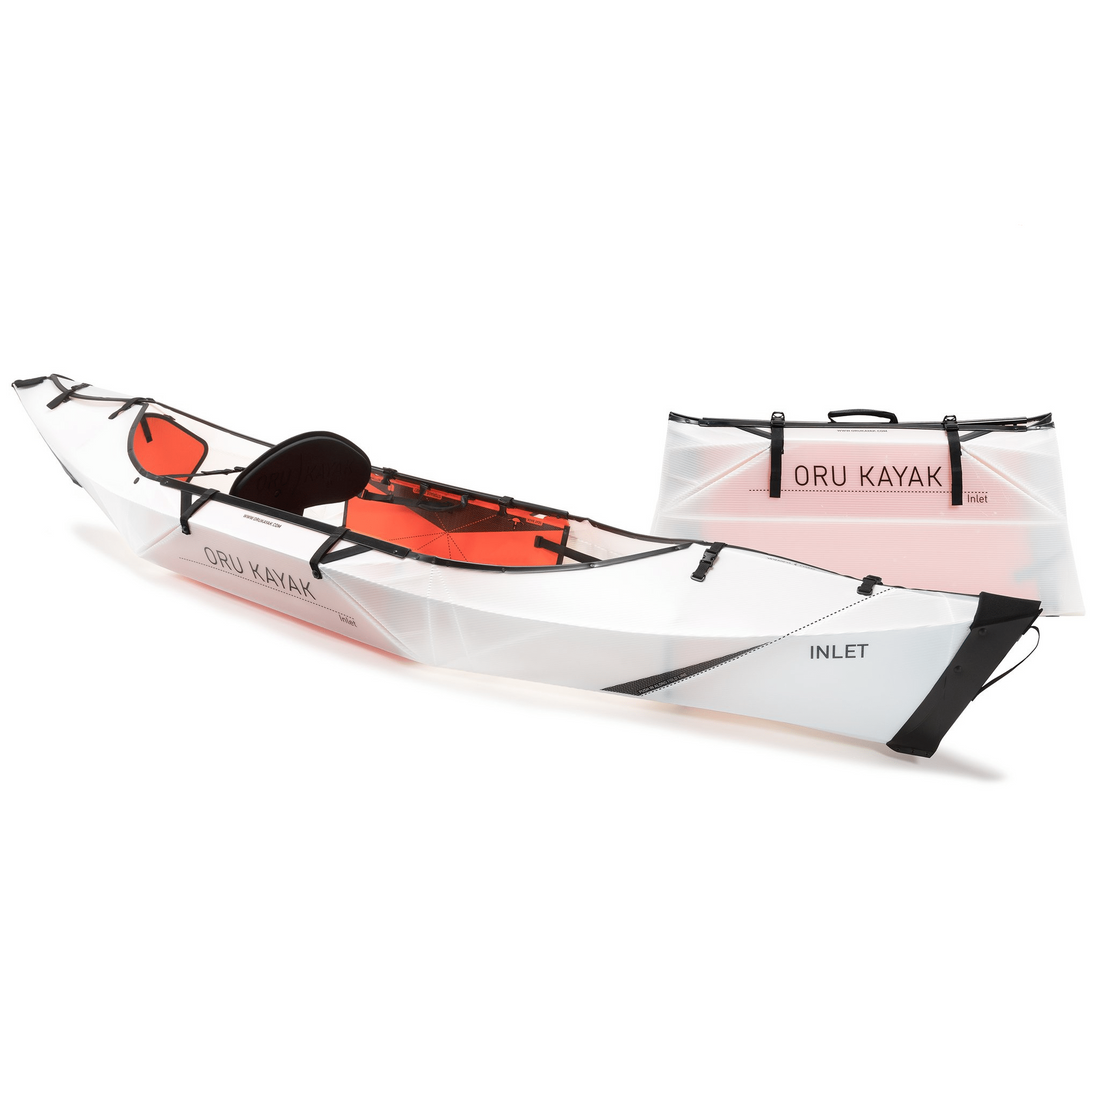 Oru Kayak - Inlet - Foldable Kayak - Ottawa Valley Air Paddle